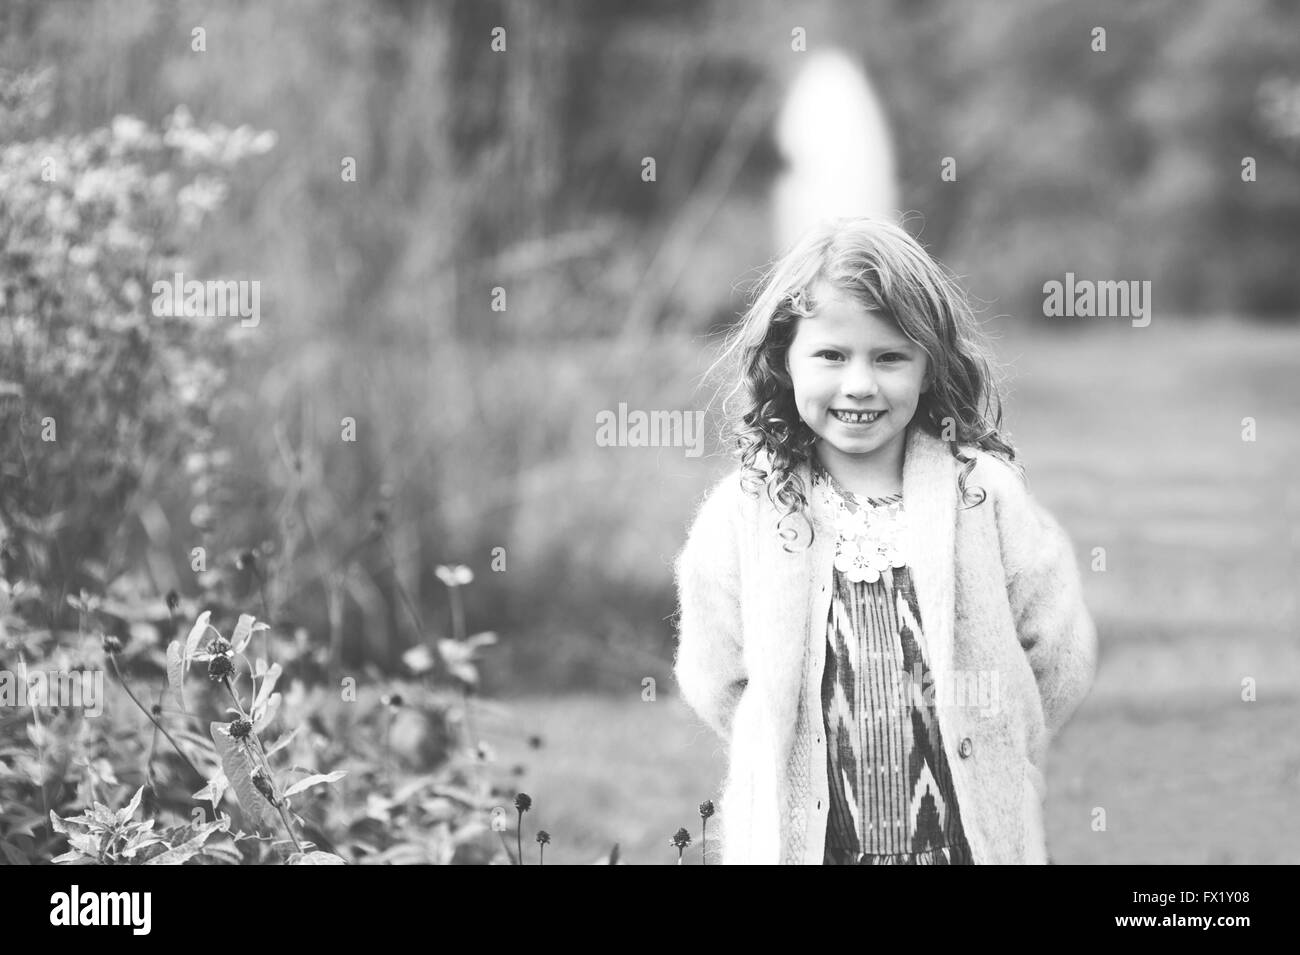 Schwarz-weiß-Porträt eines jungen Mädchens in einem Park. Stockfoto